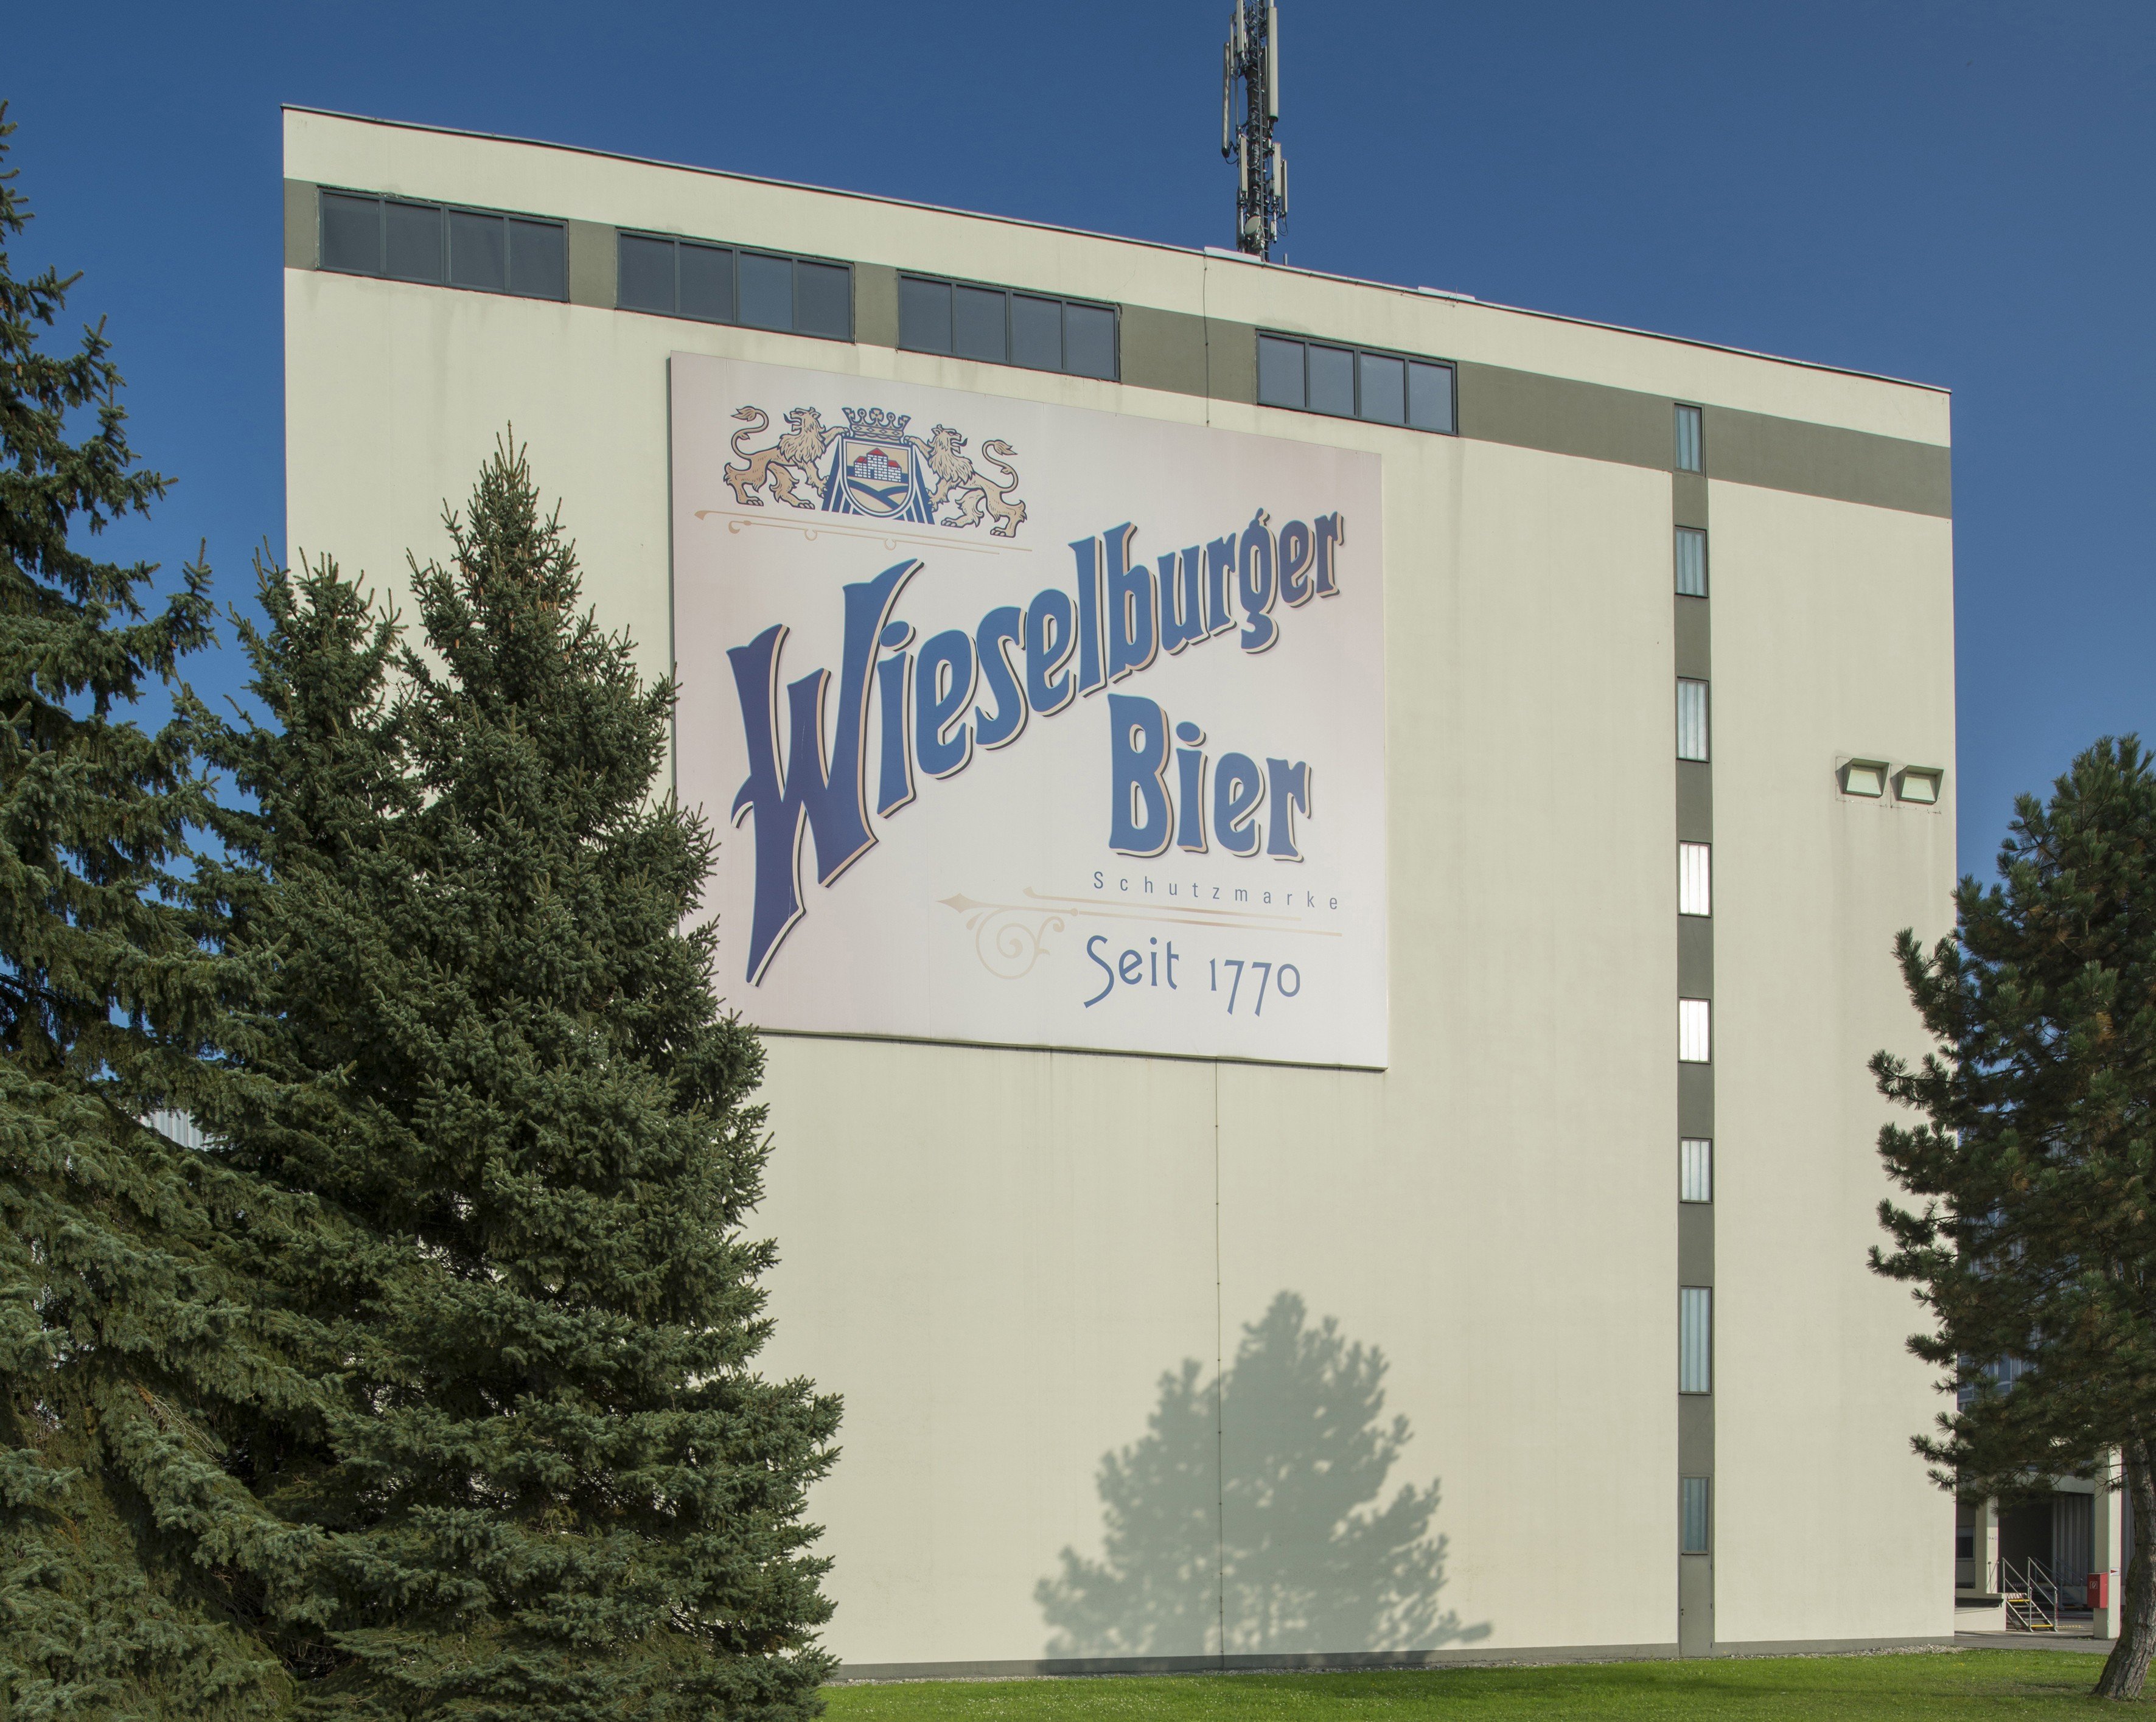 Wieselburger / Kaiser Bier Brauerei aus Österreich